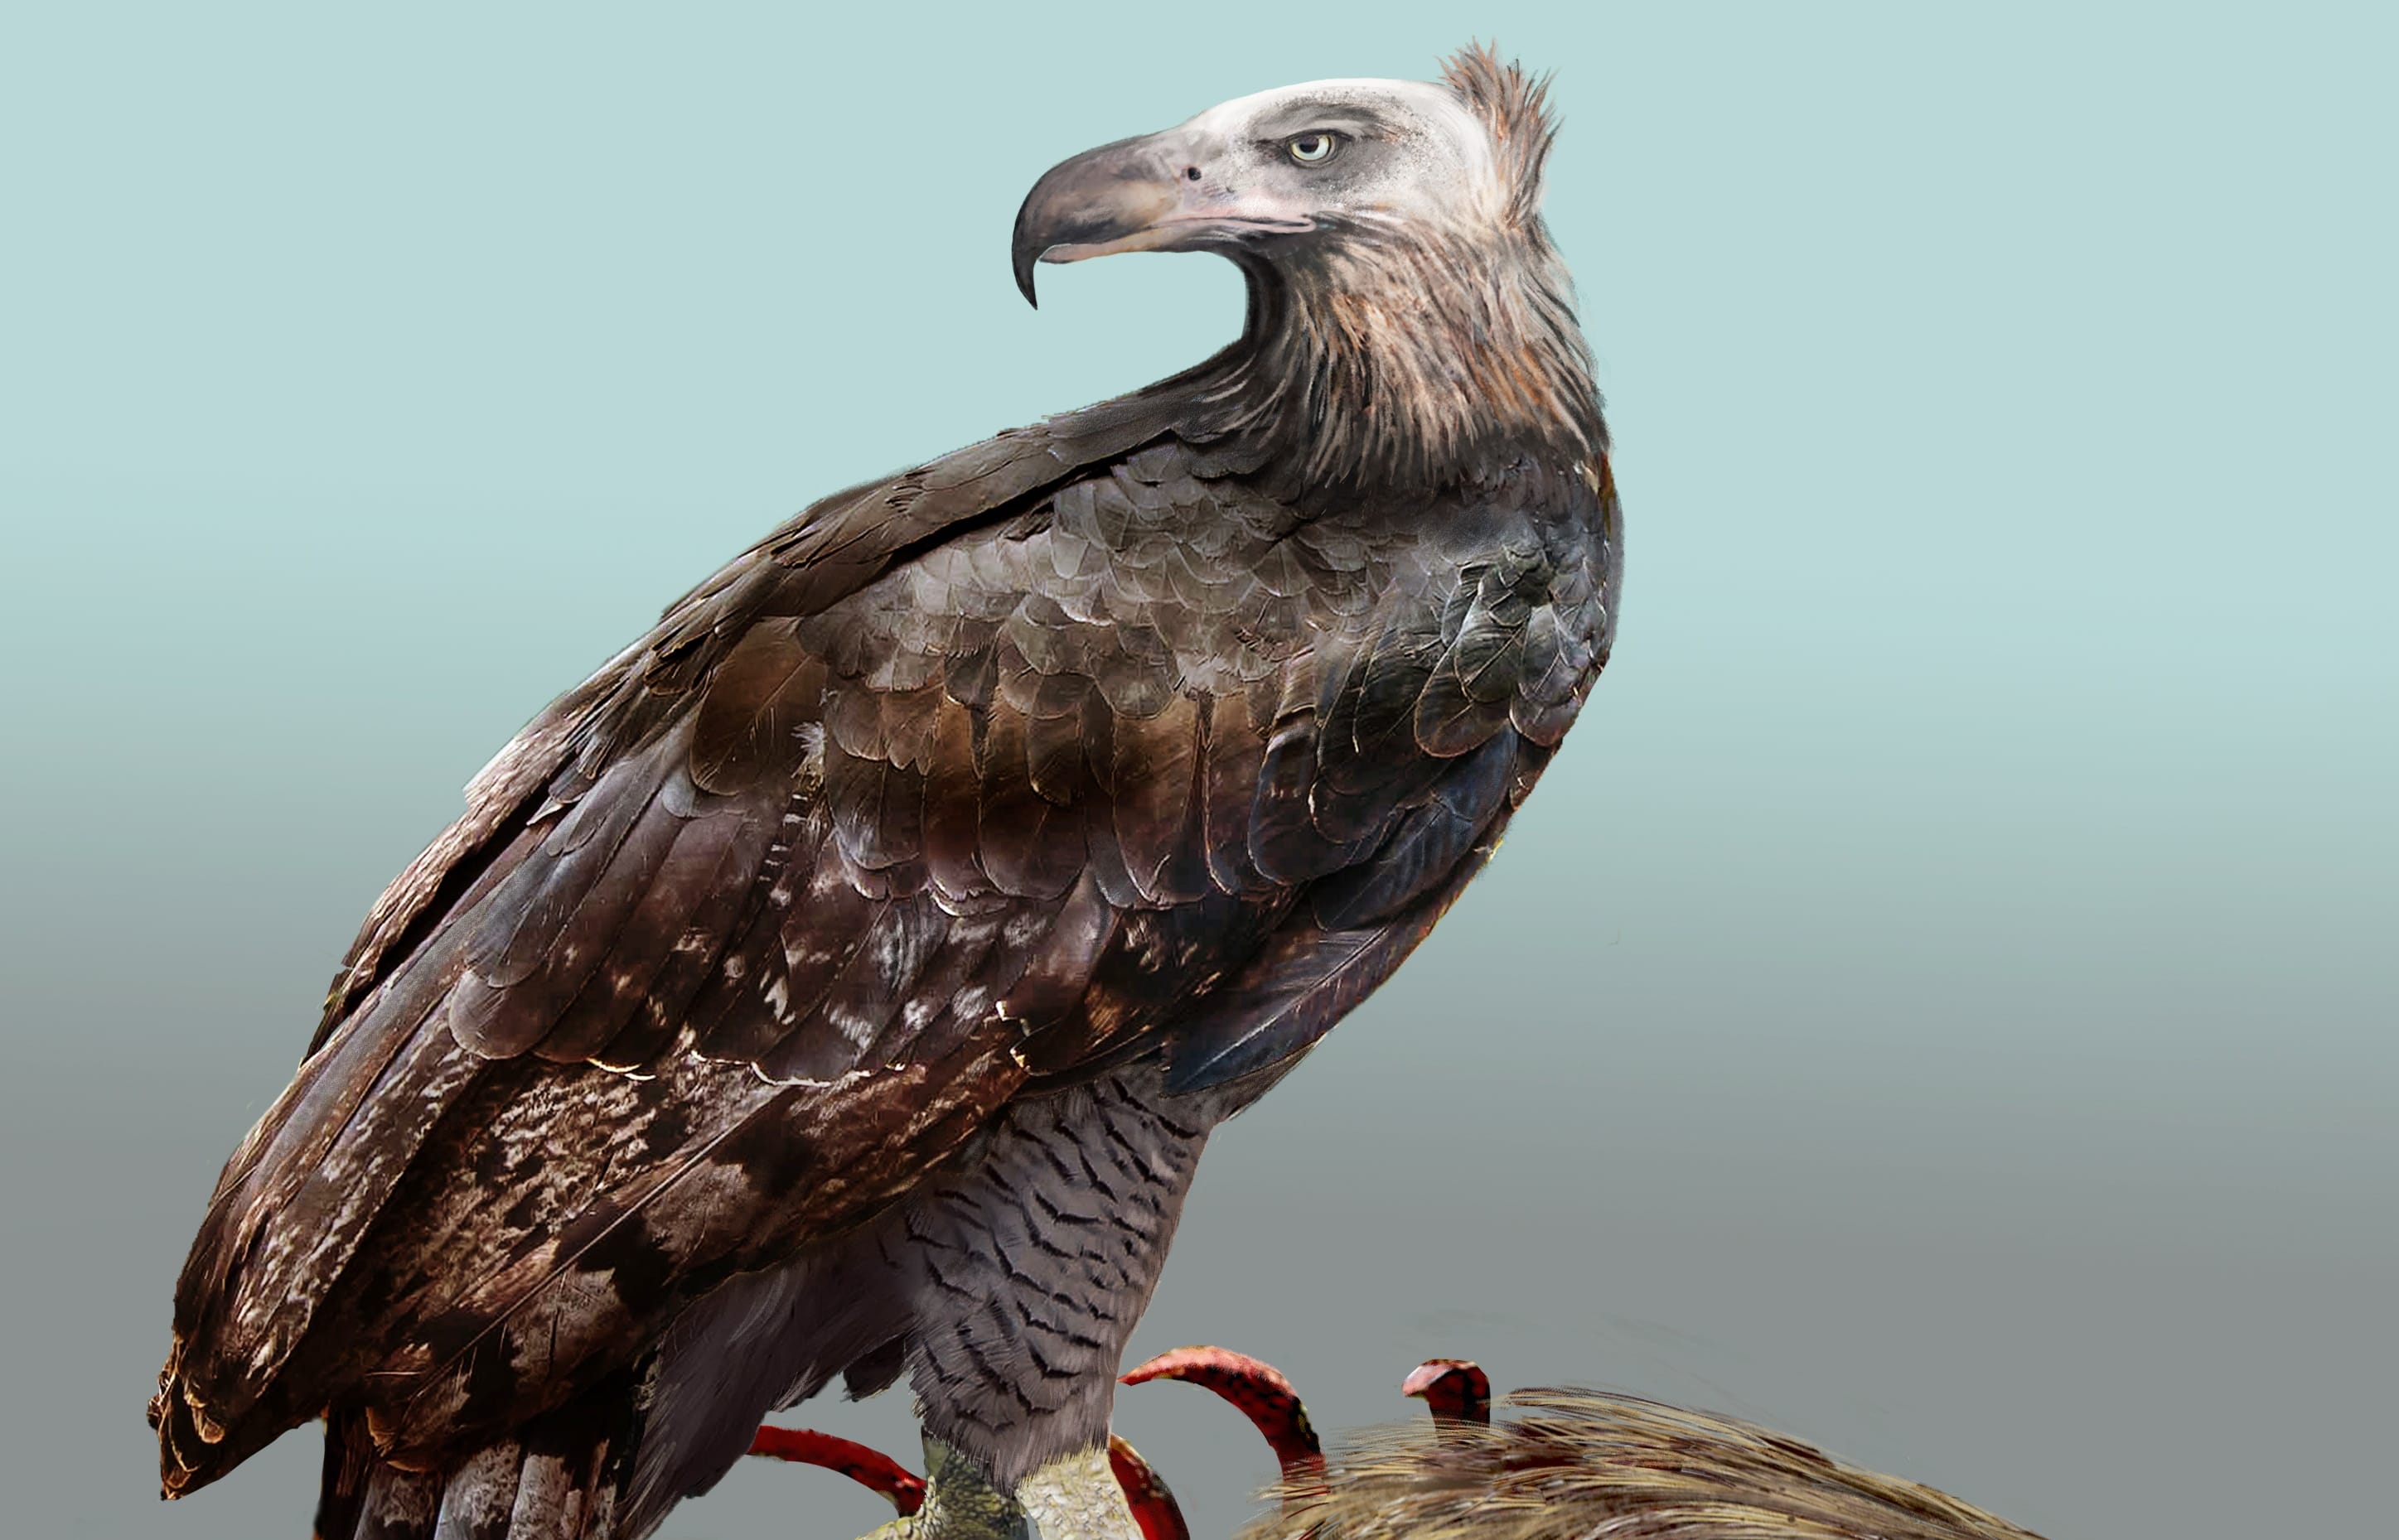 Artist’s impression of Haast’s Eagle.